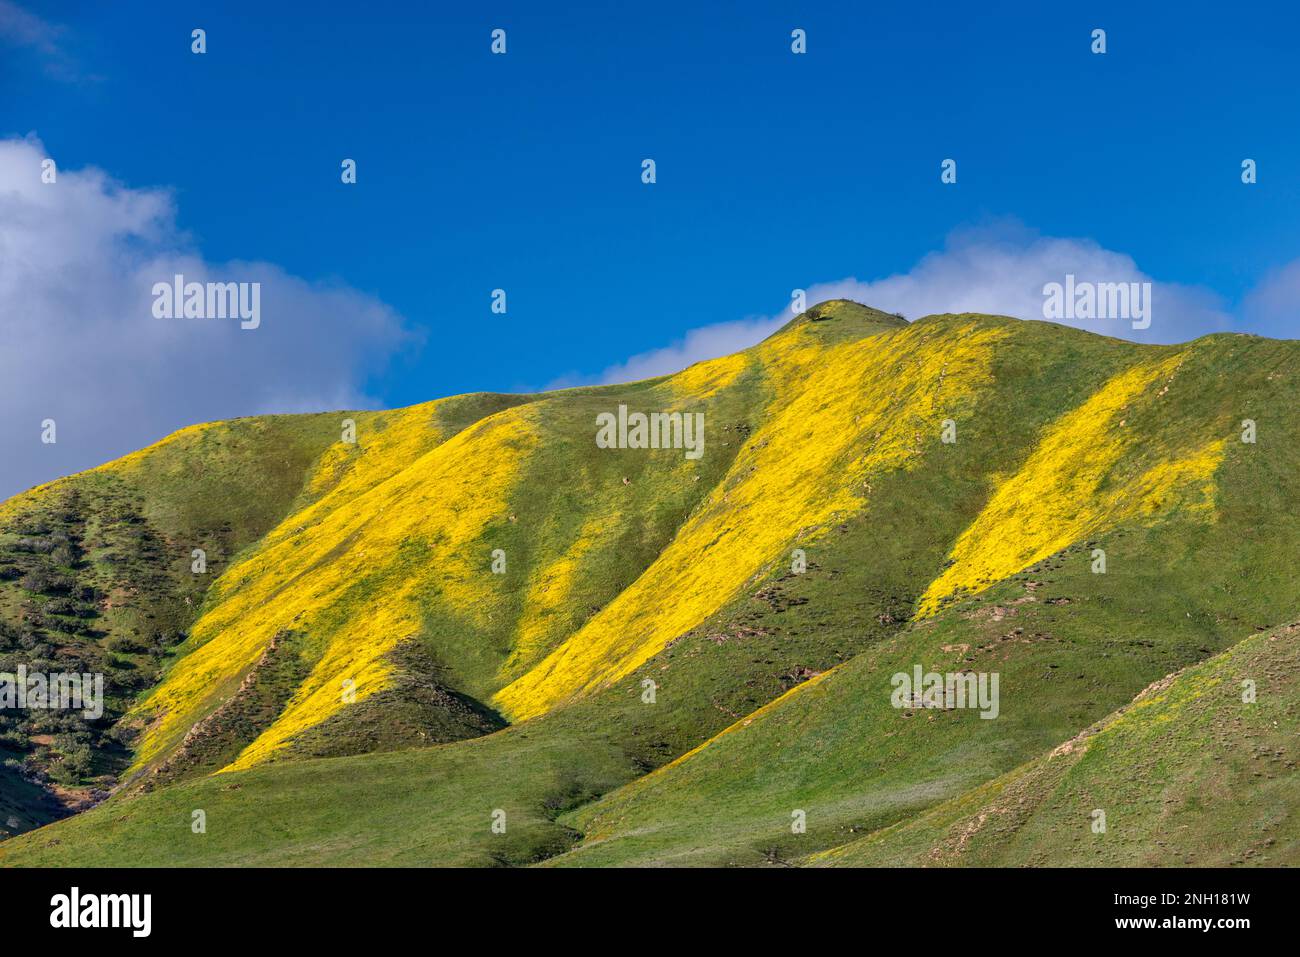 Collines couvertes de pâquerettes à flanc de colline en pleine floraison début mars, Caliente Range, vue de Soda Lake Road, Carrizo Plain National Monument, Californie Etats-Unis Banque D'Images